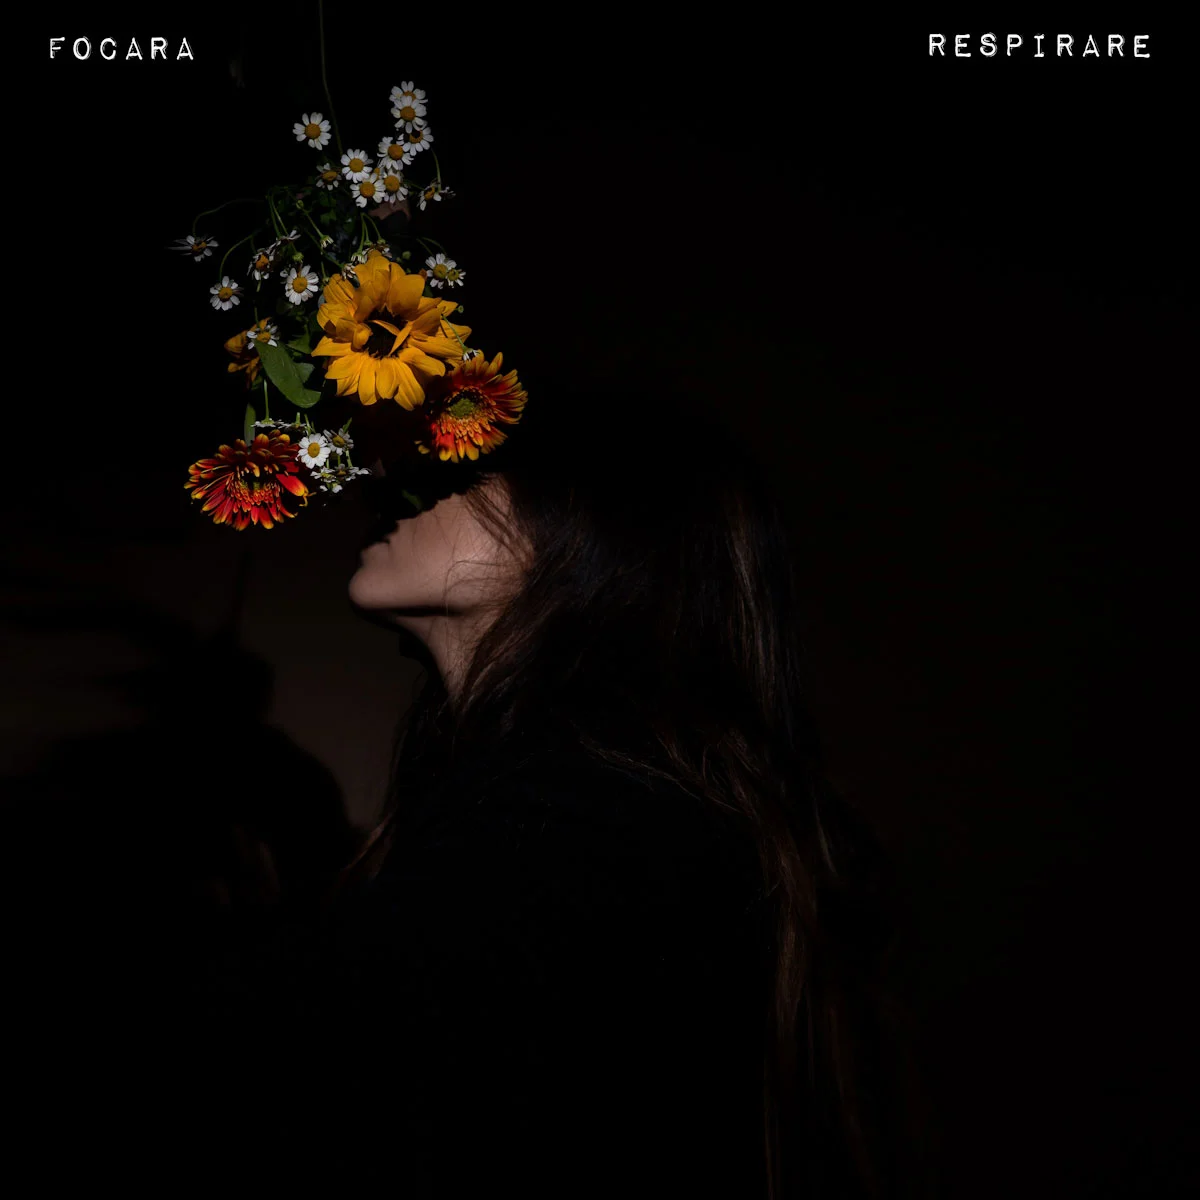 <strong> FOCARA: venerdì 13 ottobre esce il nuovo singolo “RESPIRARE”</strong>